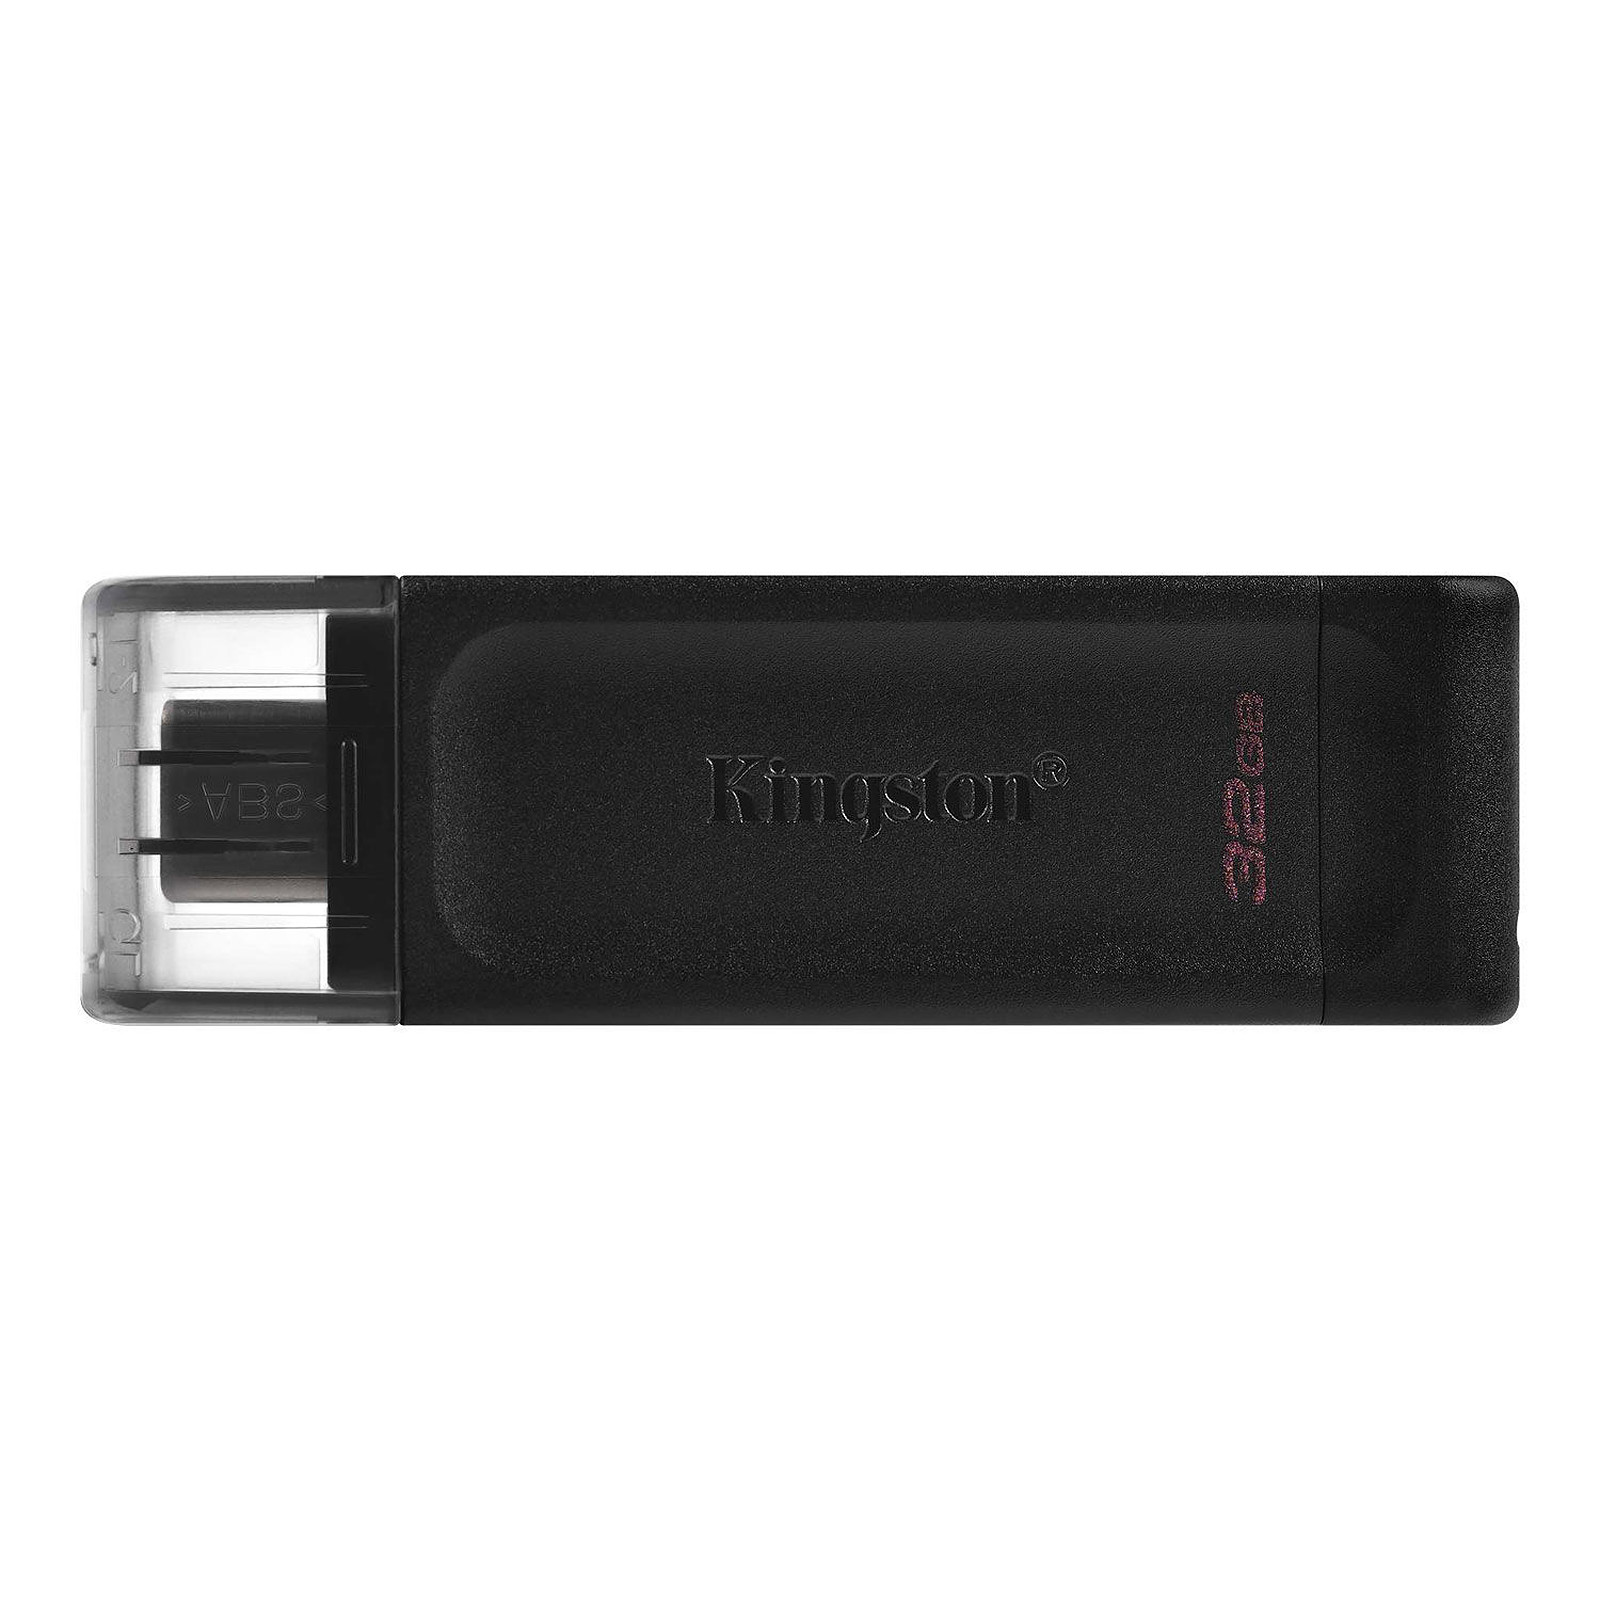 Kingston DataTraveler 70 32 Go - Cle USB Kingston